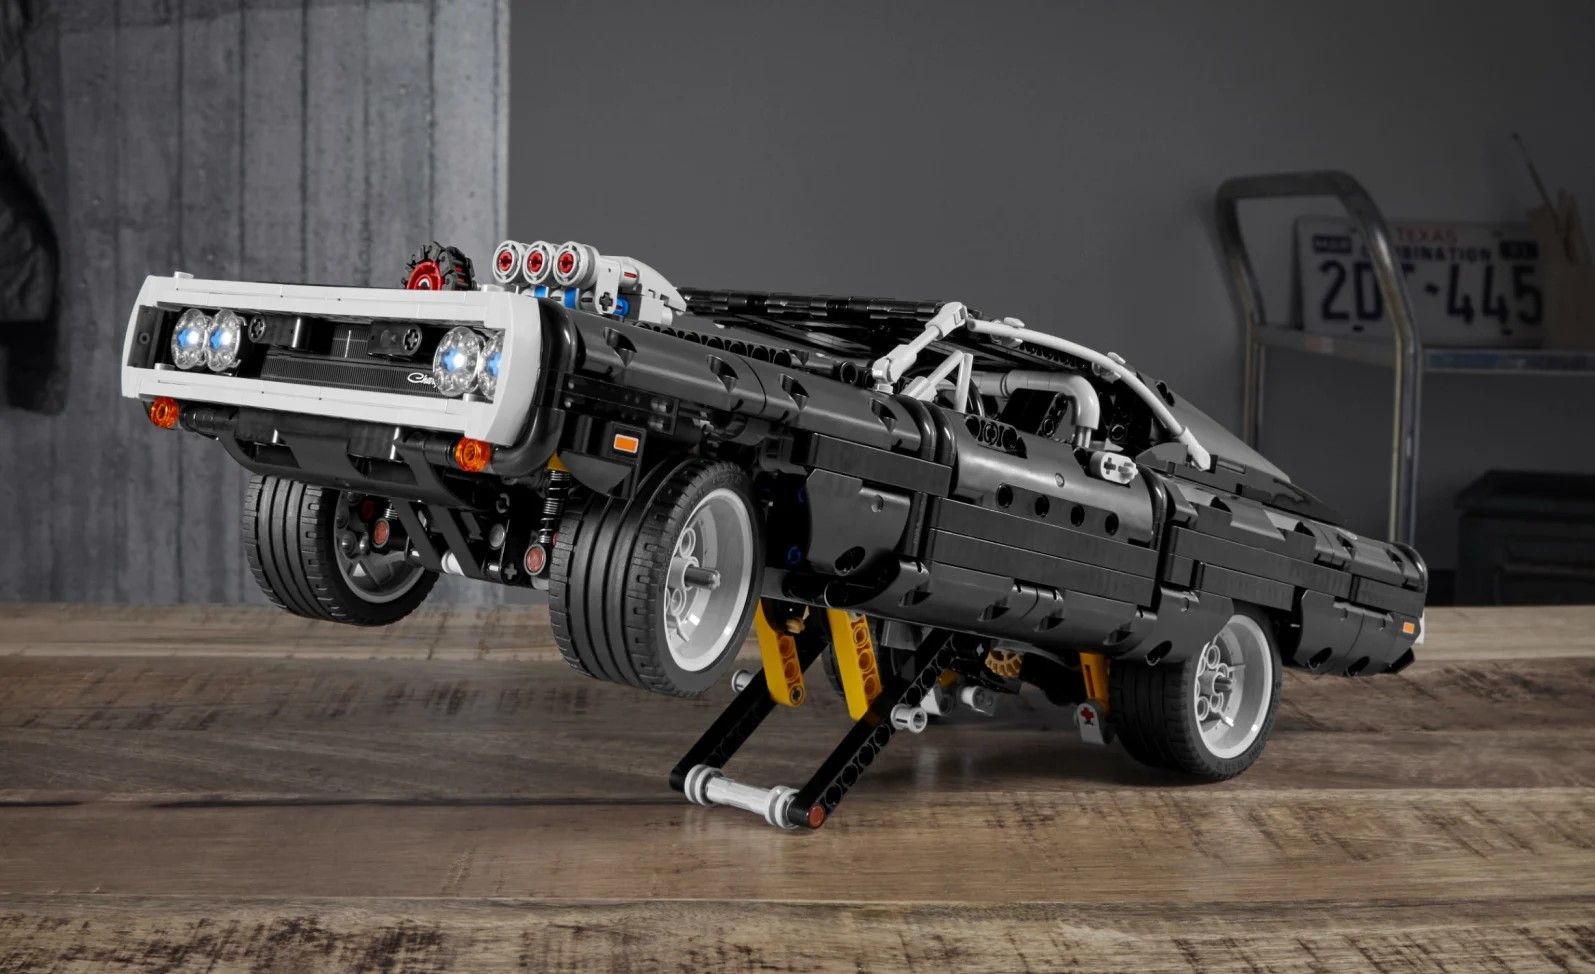 temperatura Diálogo borde El Dodge Charger de Fast & Furious llega a la familia Lego